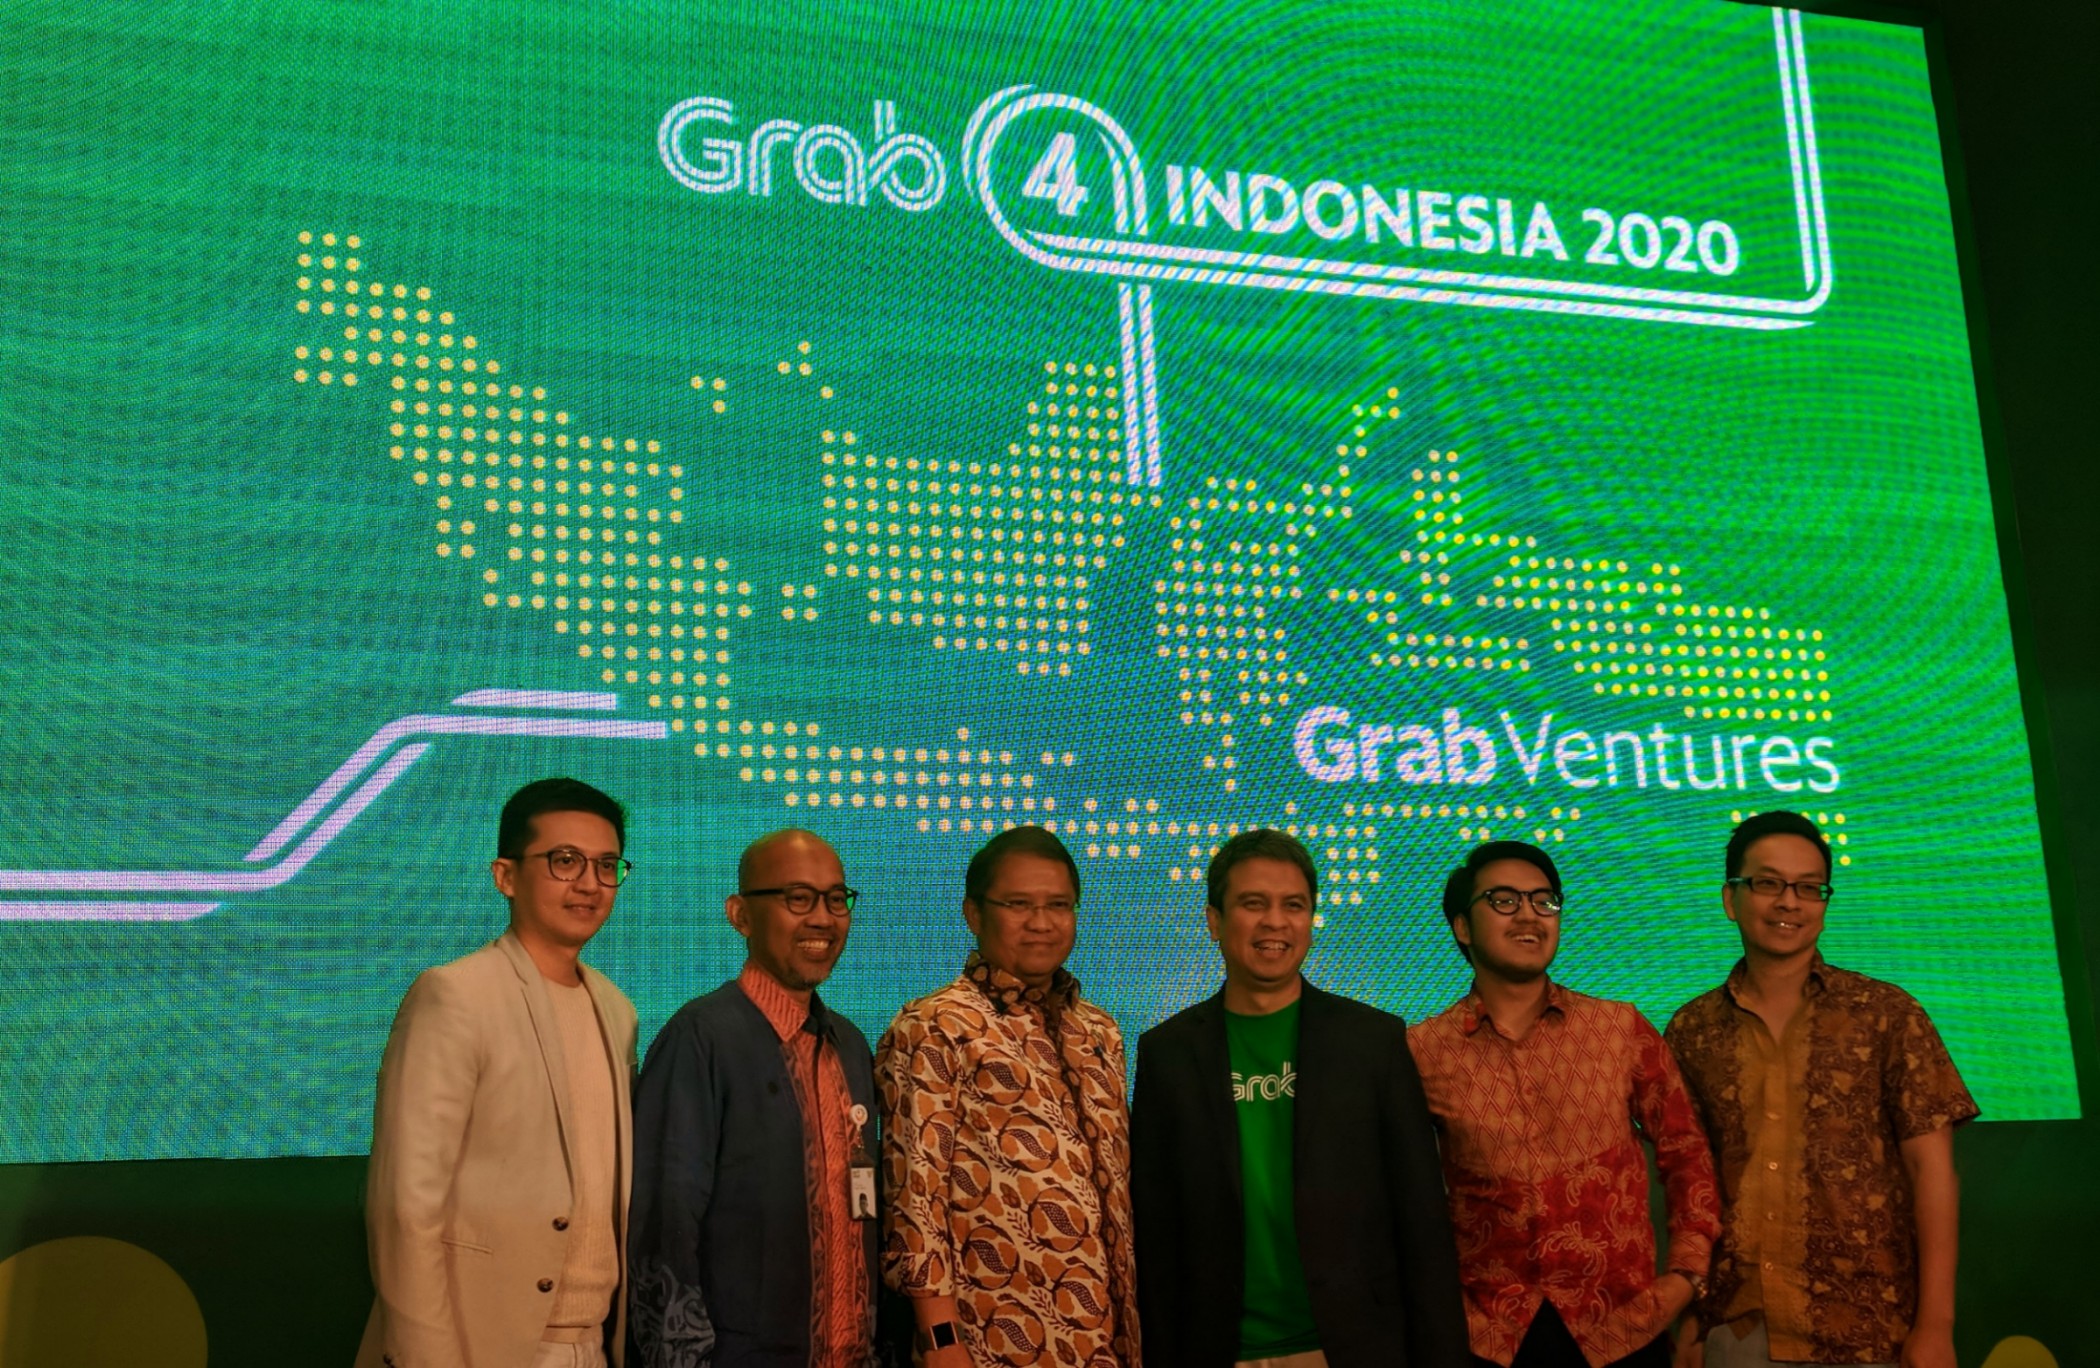 Peresmian Grab Ventures di Indonesia turut dihadiri Menkominfo Rudiantara, perwakilan MDI Ventures dan AWS / DailySocial